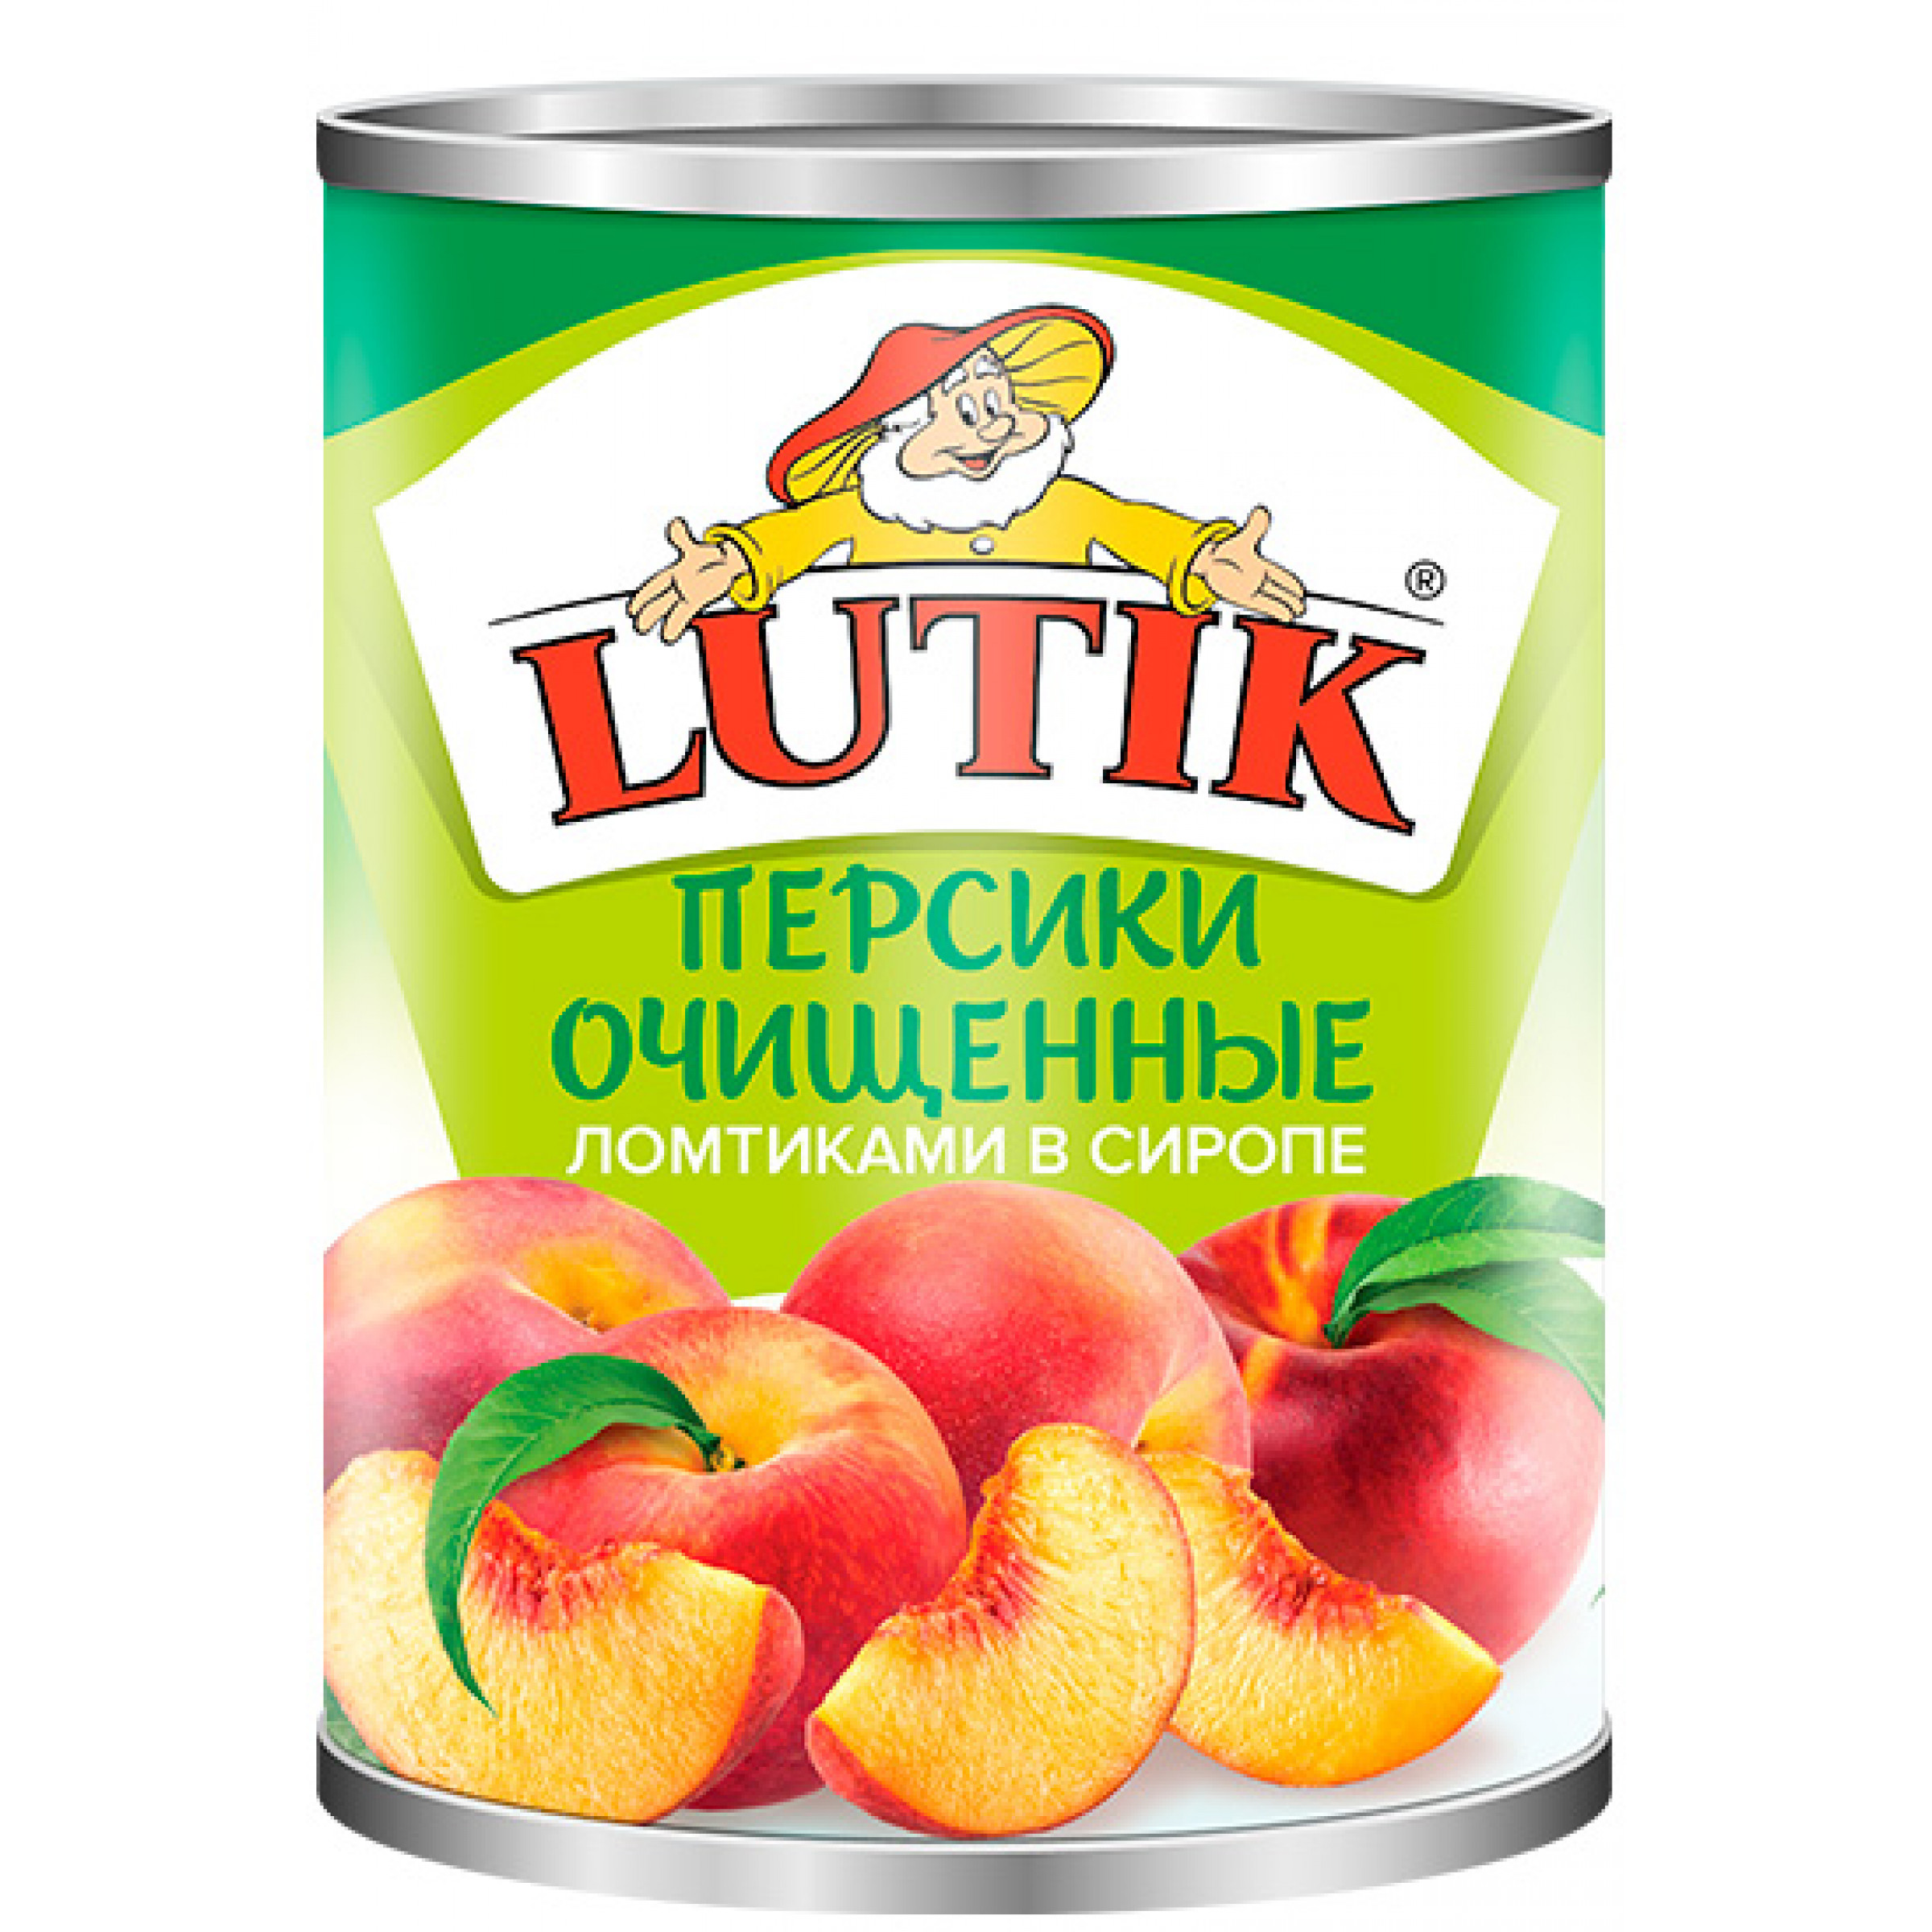 Персики дольки в сиропе LUTIK, 850 г